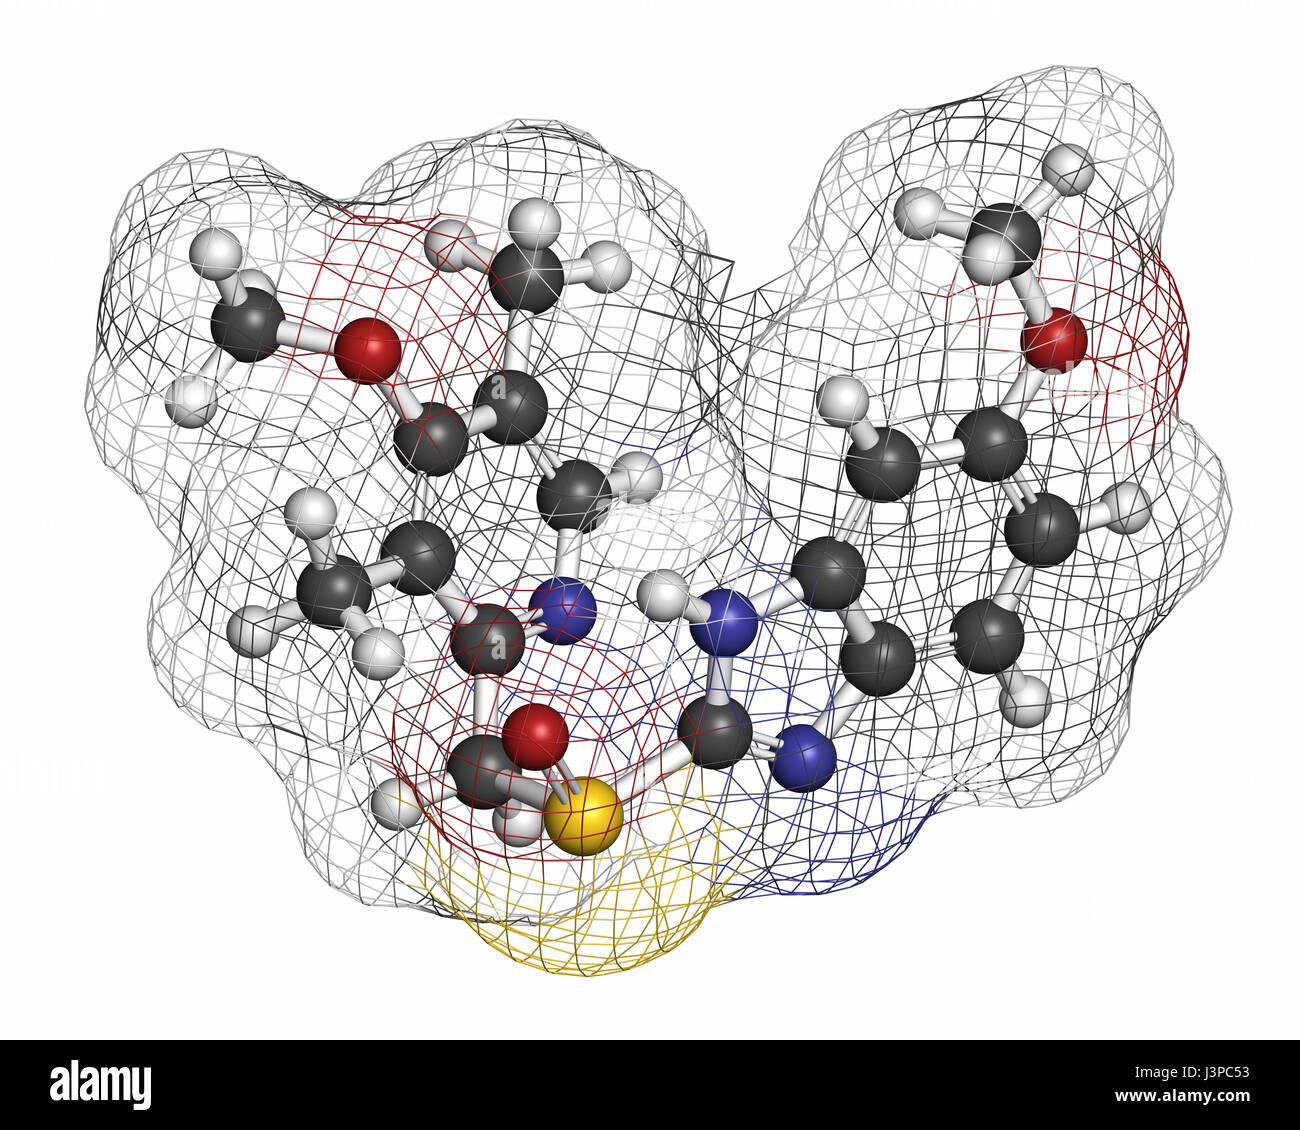 L'esoméprazole, l'ulcère peptique molécule pharmaceutique (inhibiteur de la pompe à protons). Les atomes sont représentés comme des sphères classiques avec codage couleur : blanc (hydrogène), ca Banque D'Images